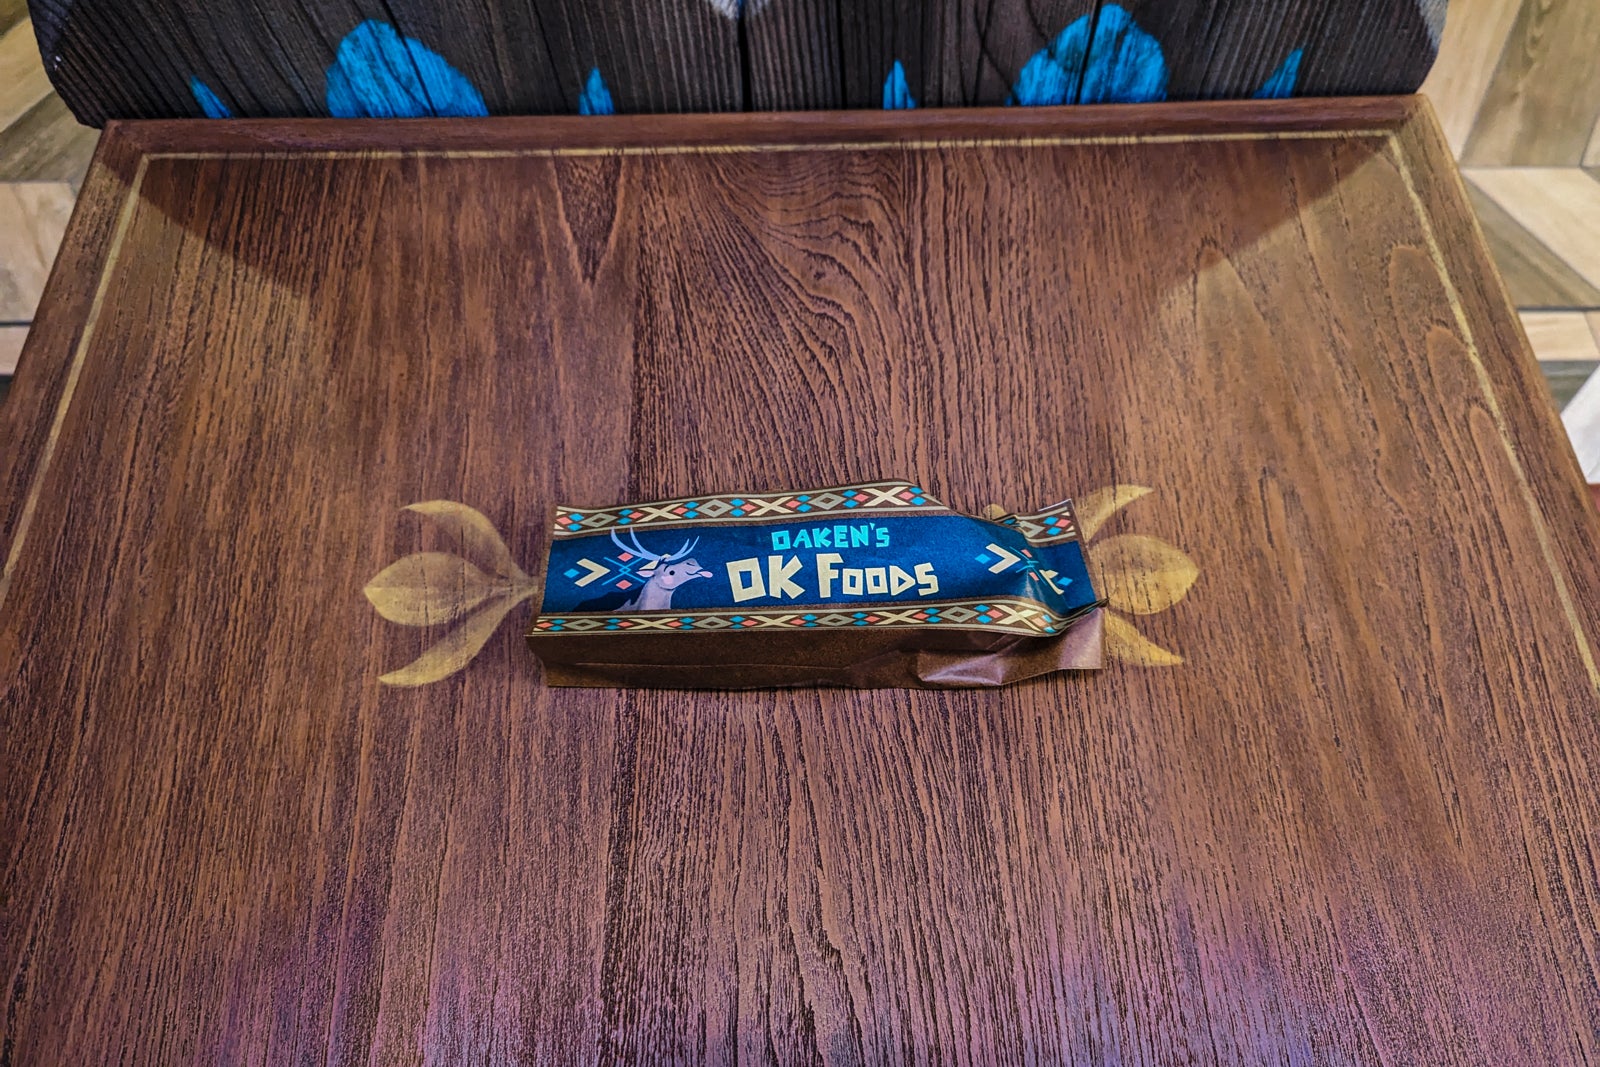 Oaken's OK Foods counter